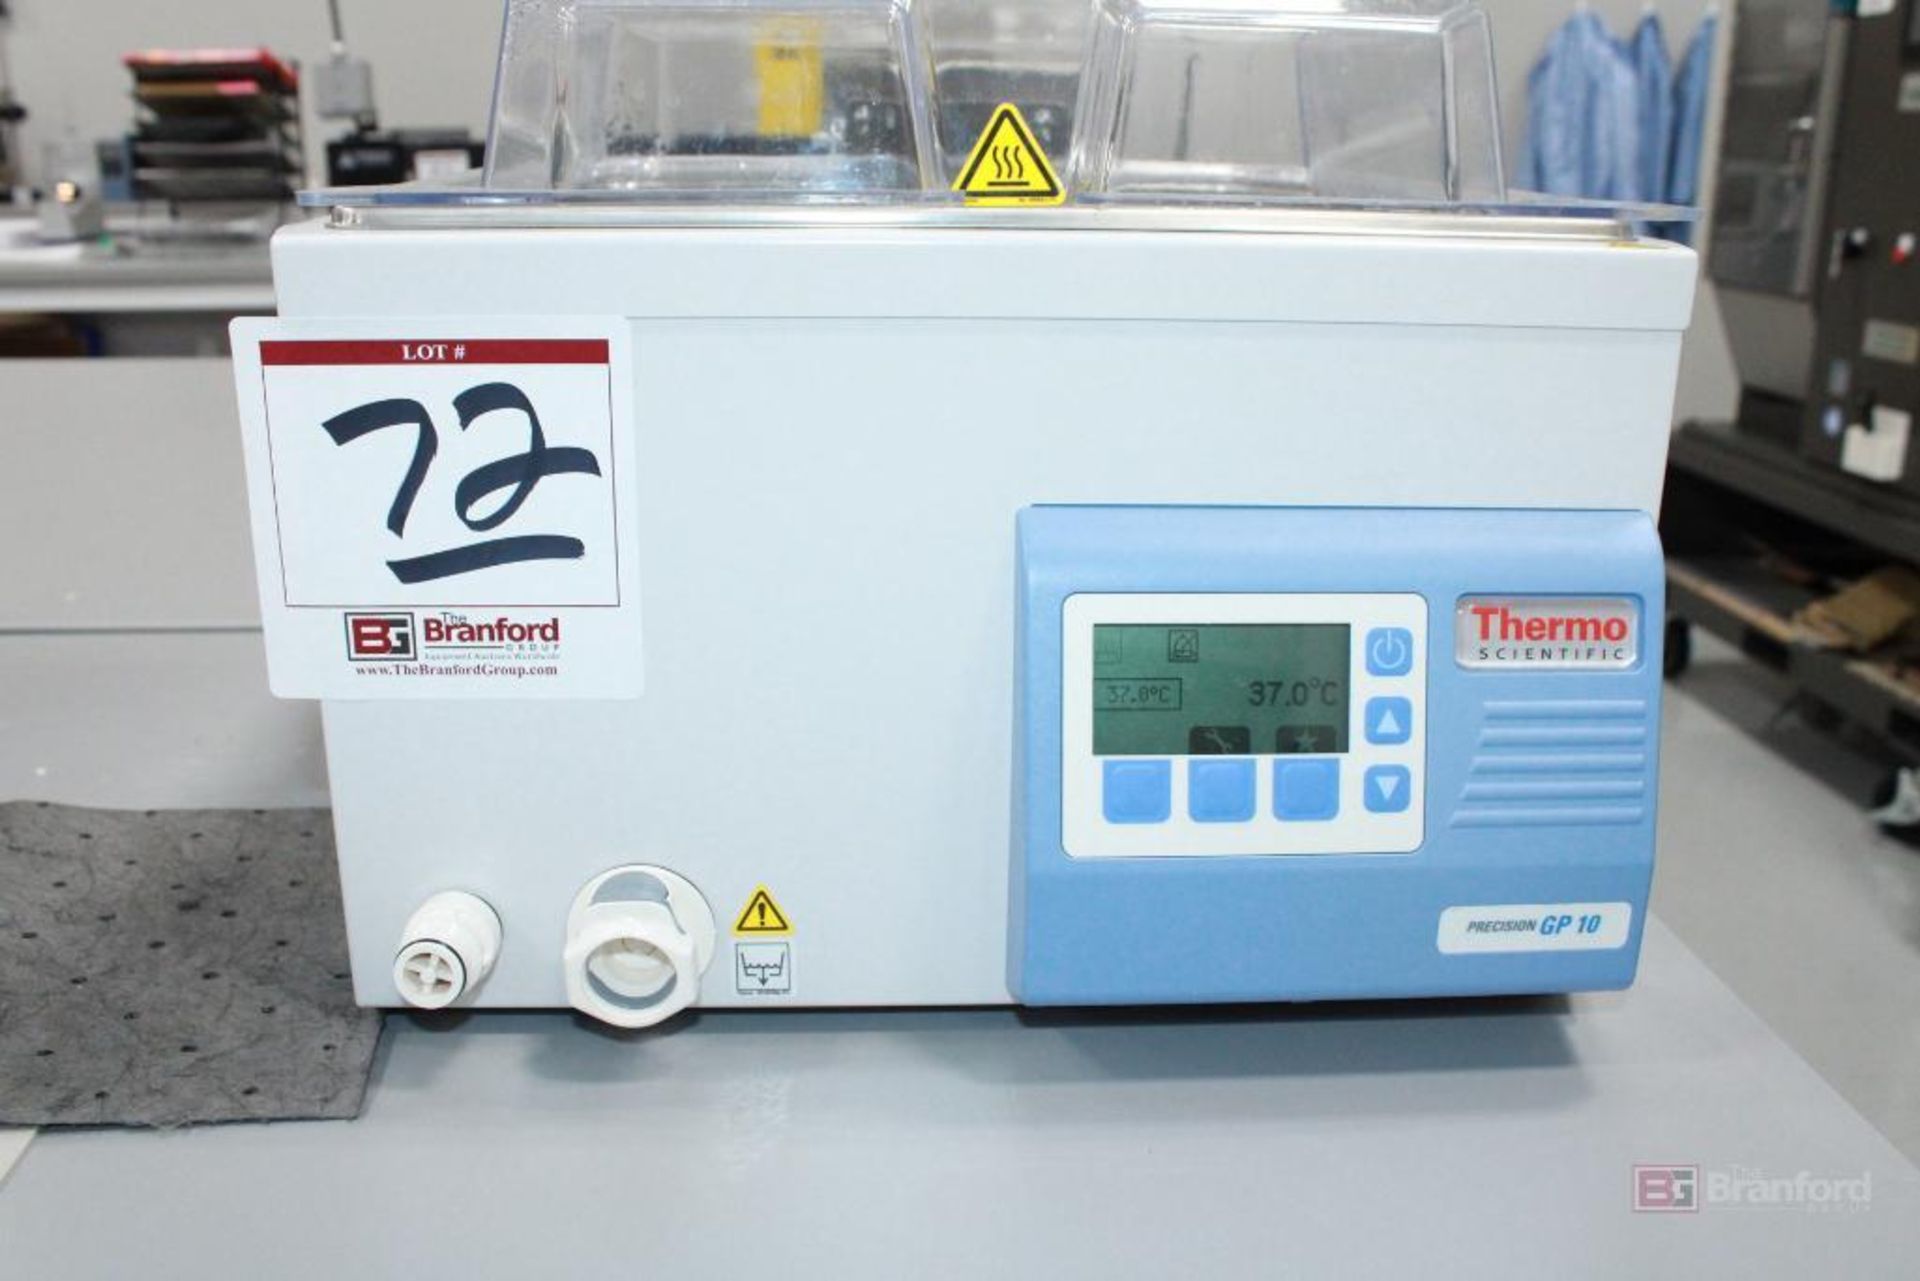 Thermo Scientific Precision GP 10 Model TSGP10 - Image 2 of 4